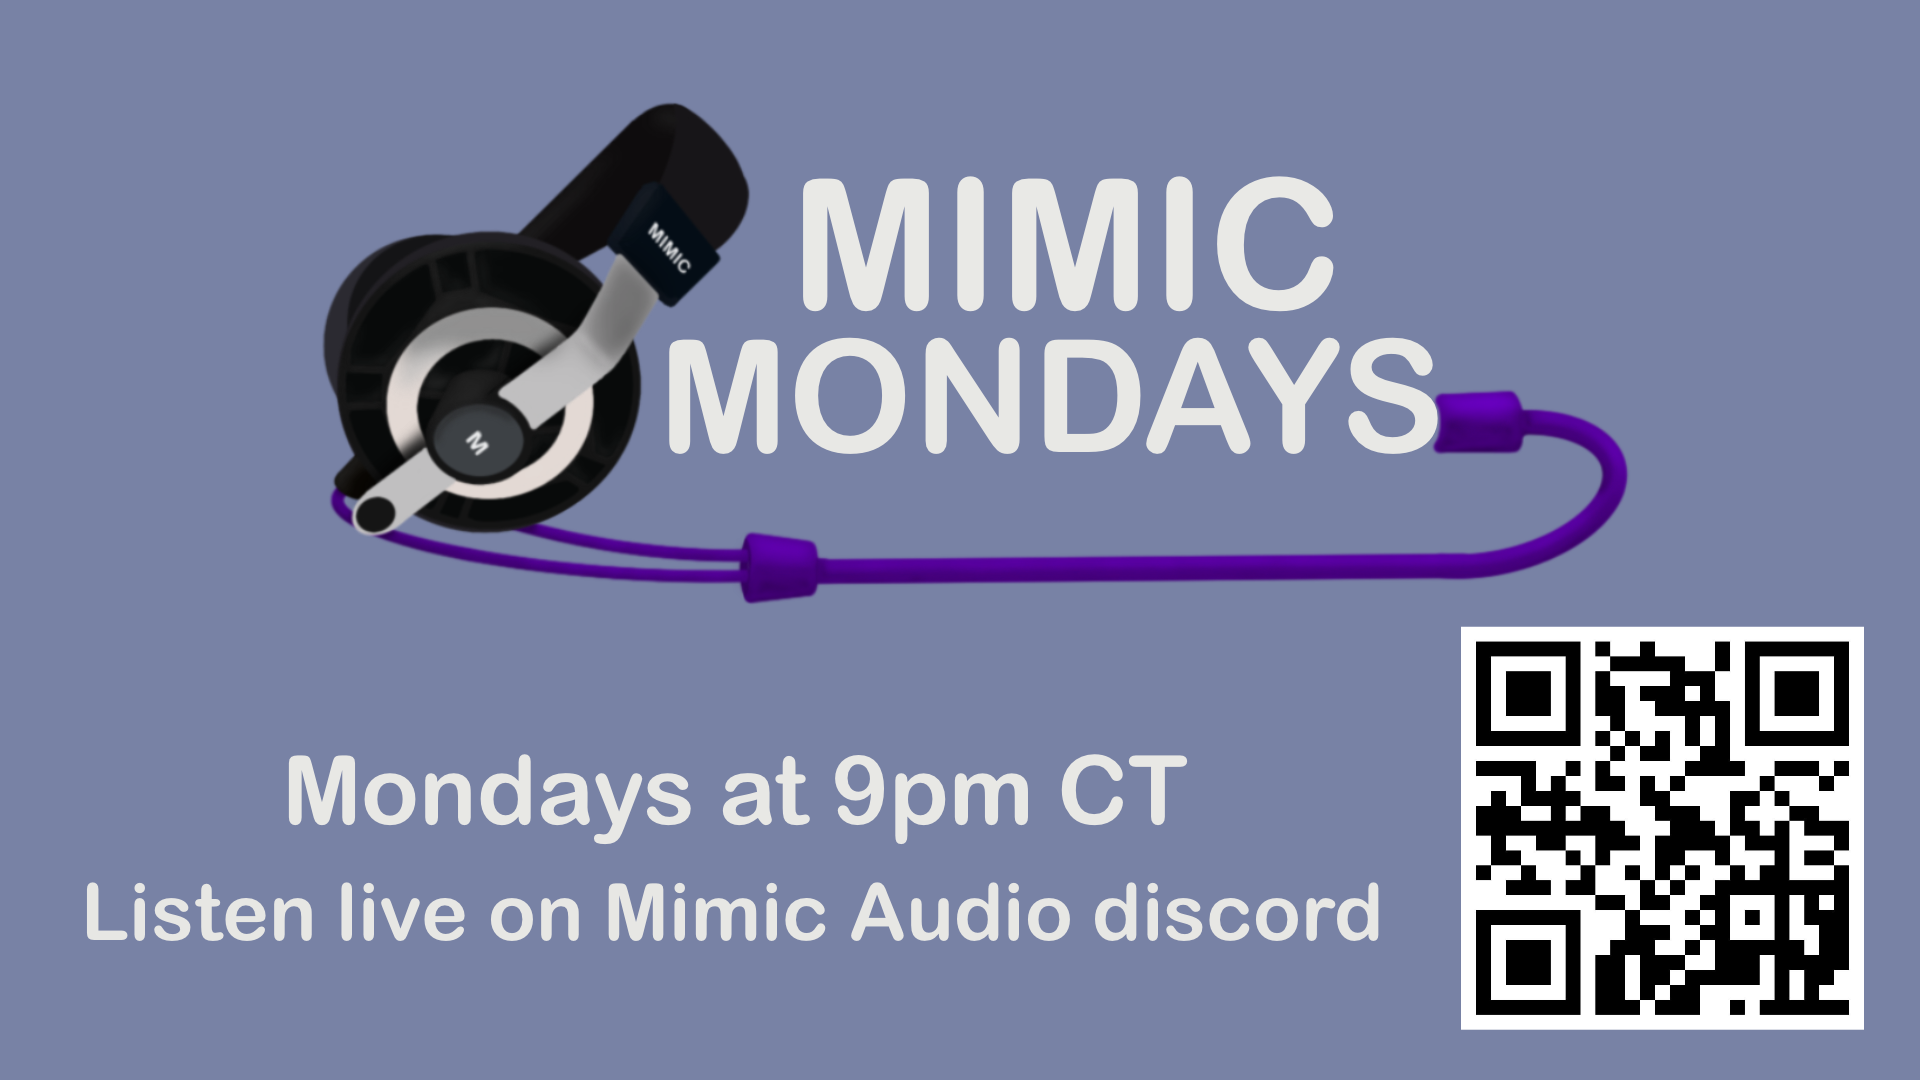 Mimic Mondays Episode 3 is now live!